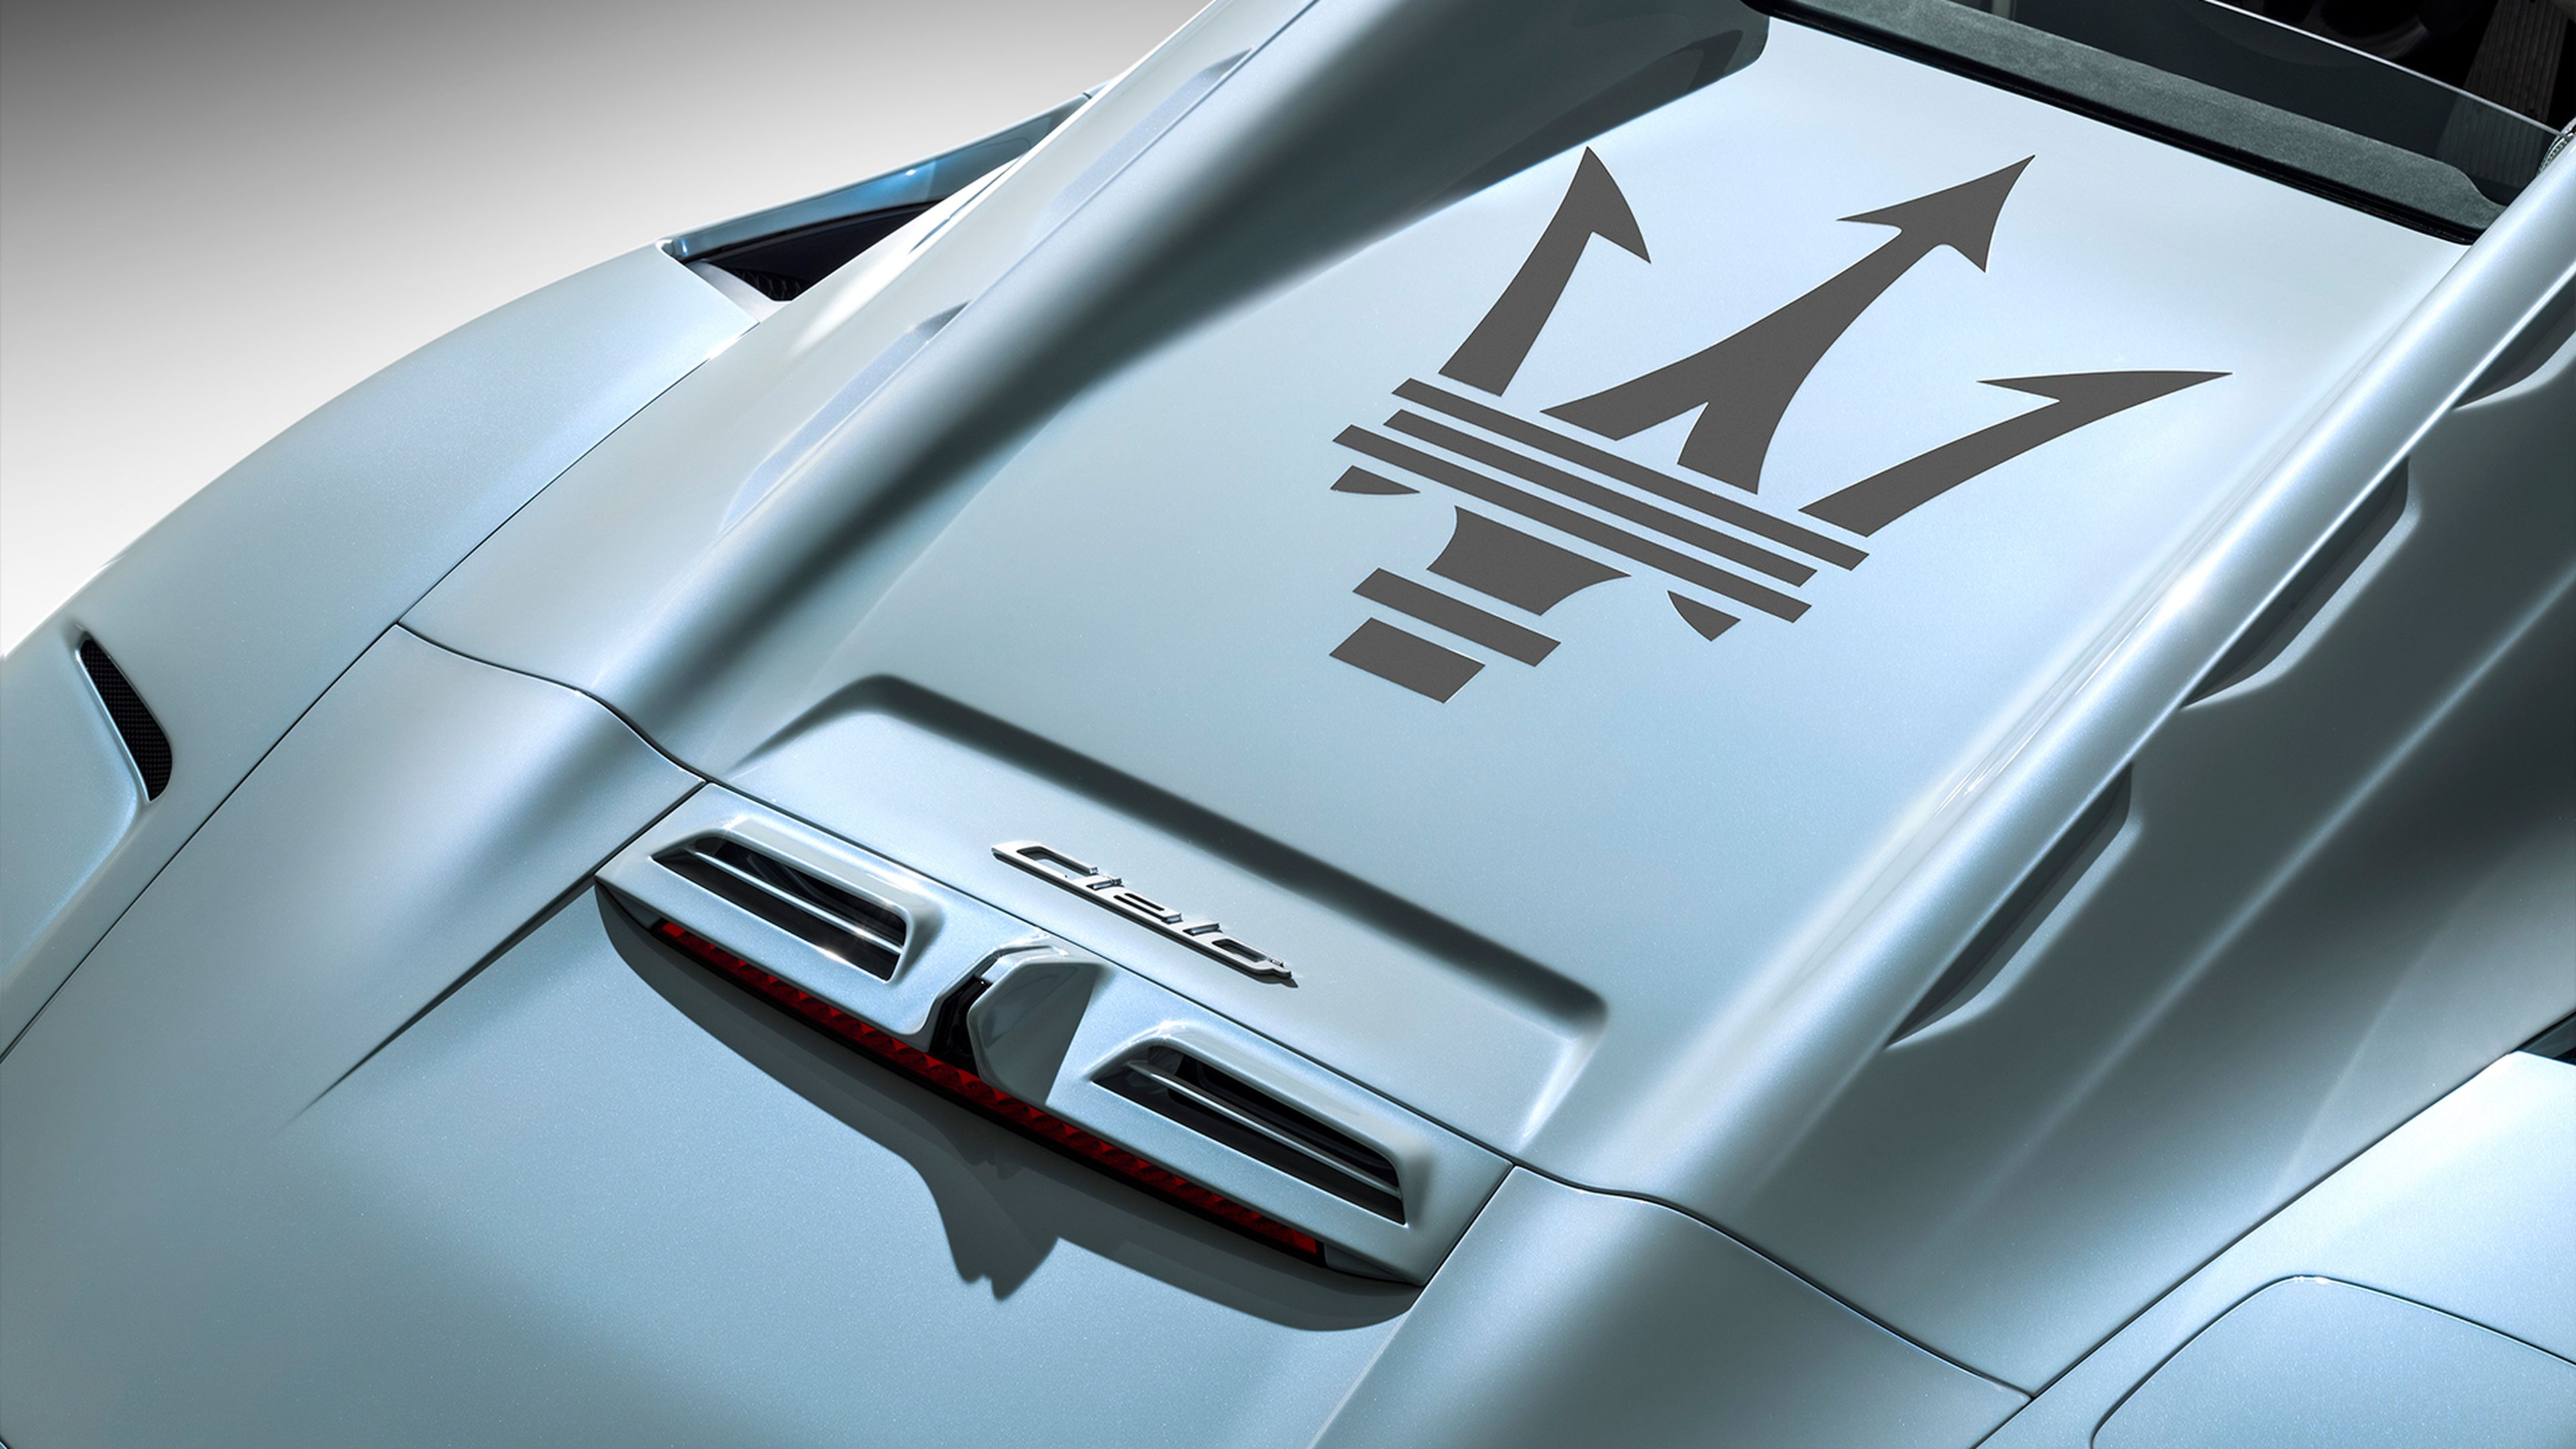 Parte trasera del Maserati MC20 Cielo, con el logo tridente de la marca.